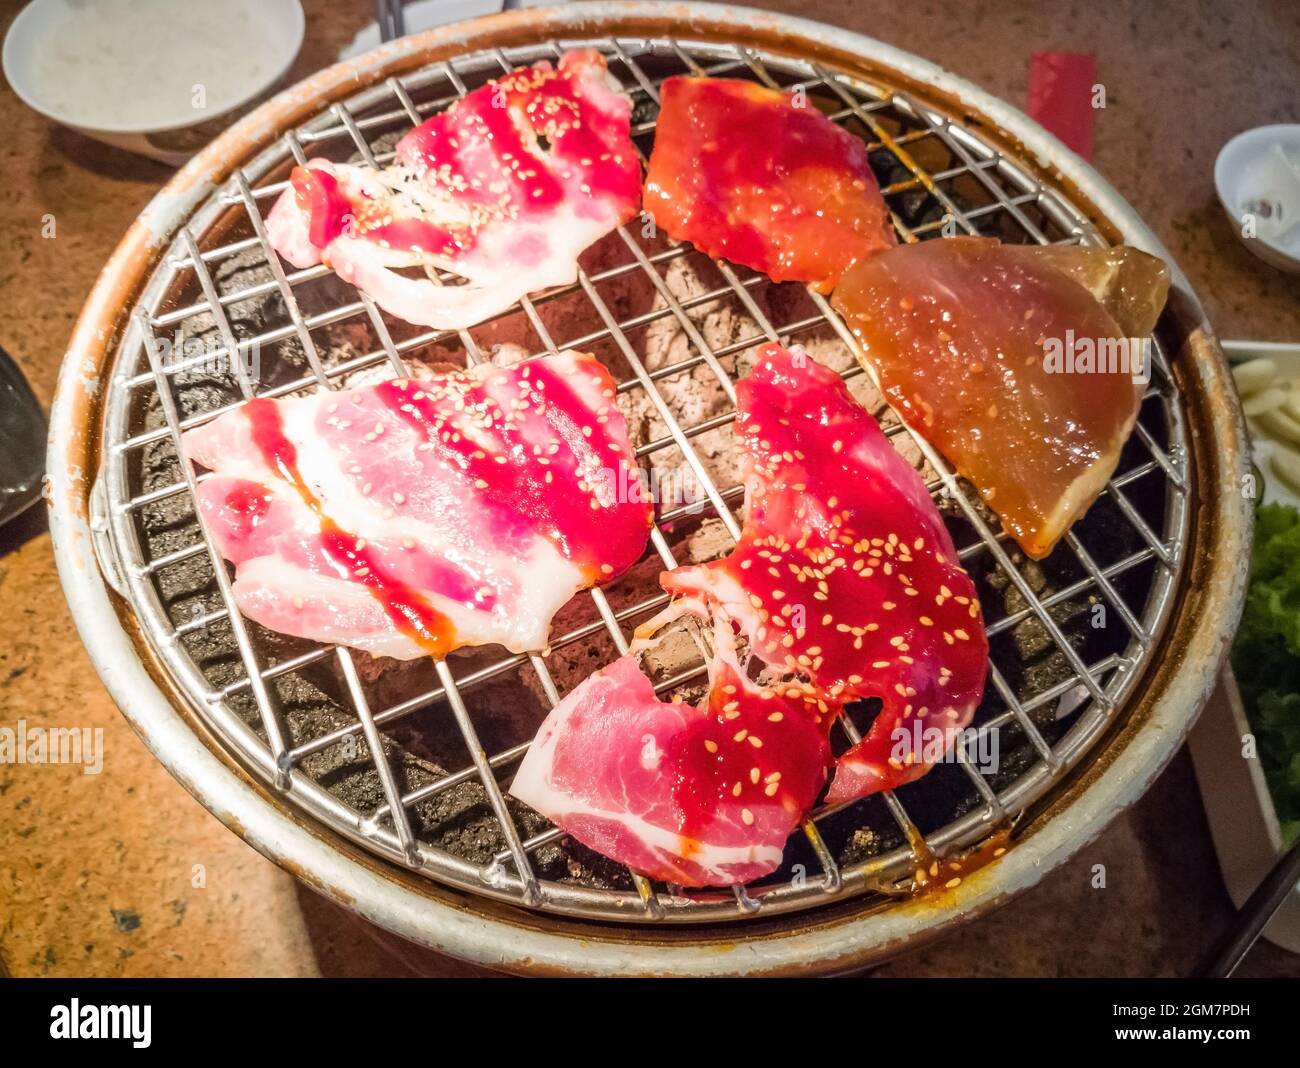 Tranche de porc de qualité supérieure grillée sur le poêle yakiniku qui a du charbon de bois chaud. Barbecue de style japonais. Image pour l'arrière-plan Banque D'Images